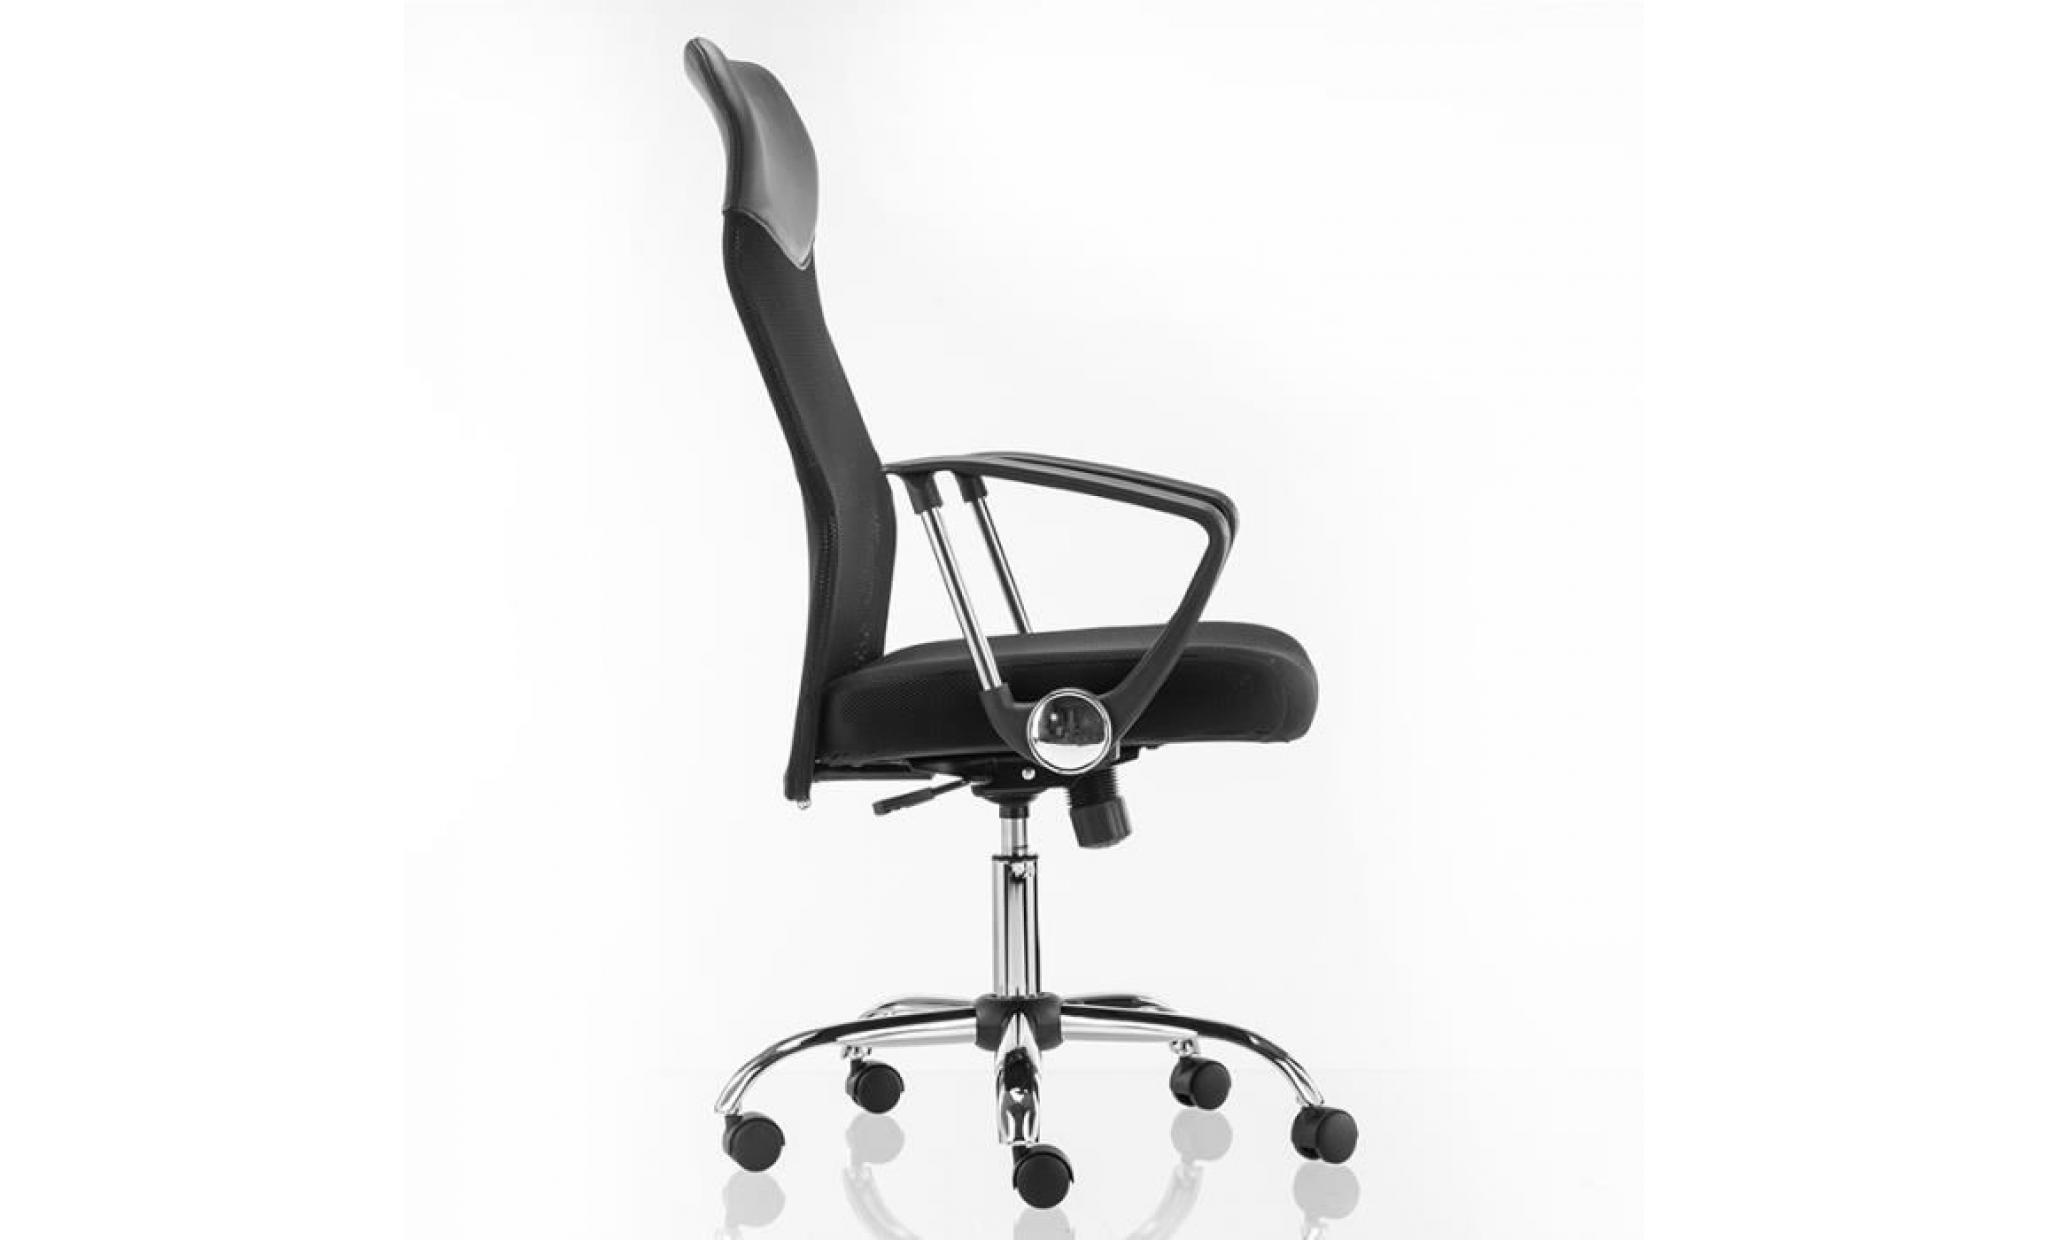 mctech chaise de bureau sur roulettes , fauteuil de bureau , fauteuil pivotant   tissu maille   hauteur réglable   noir pas cher